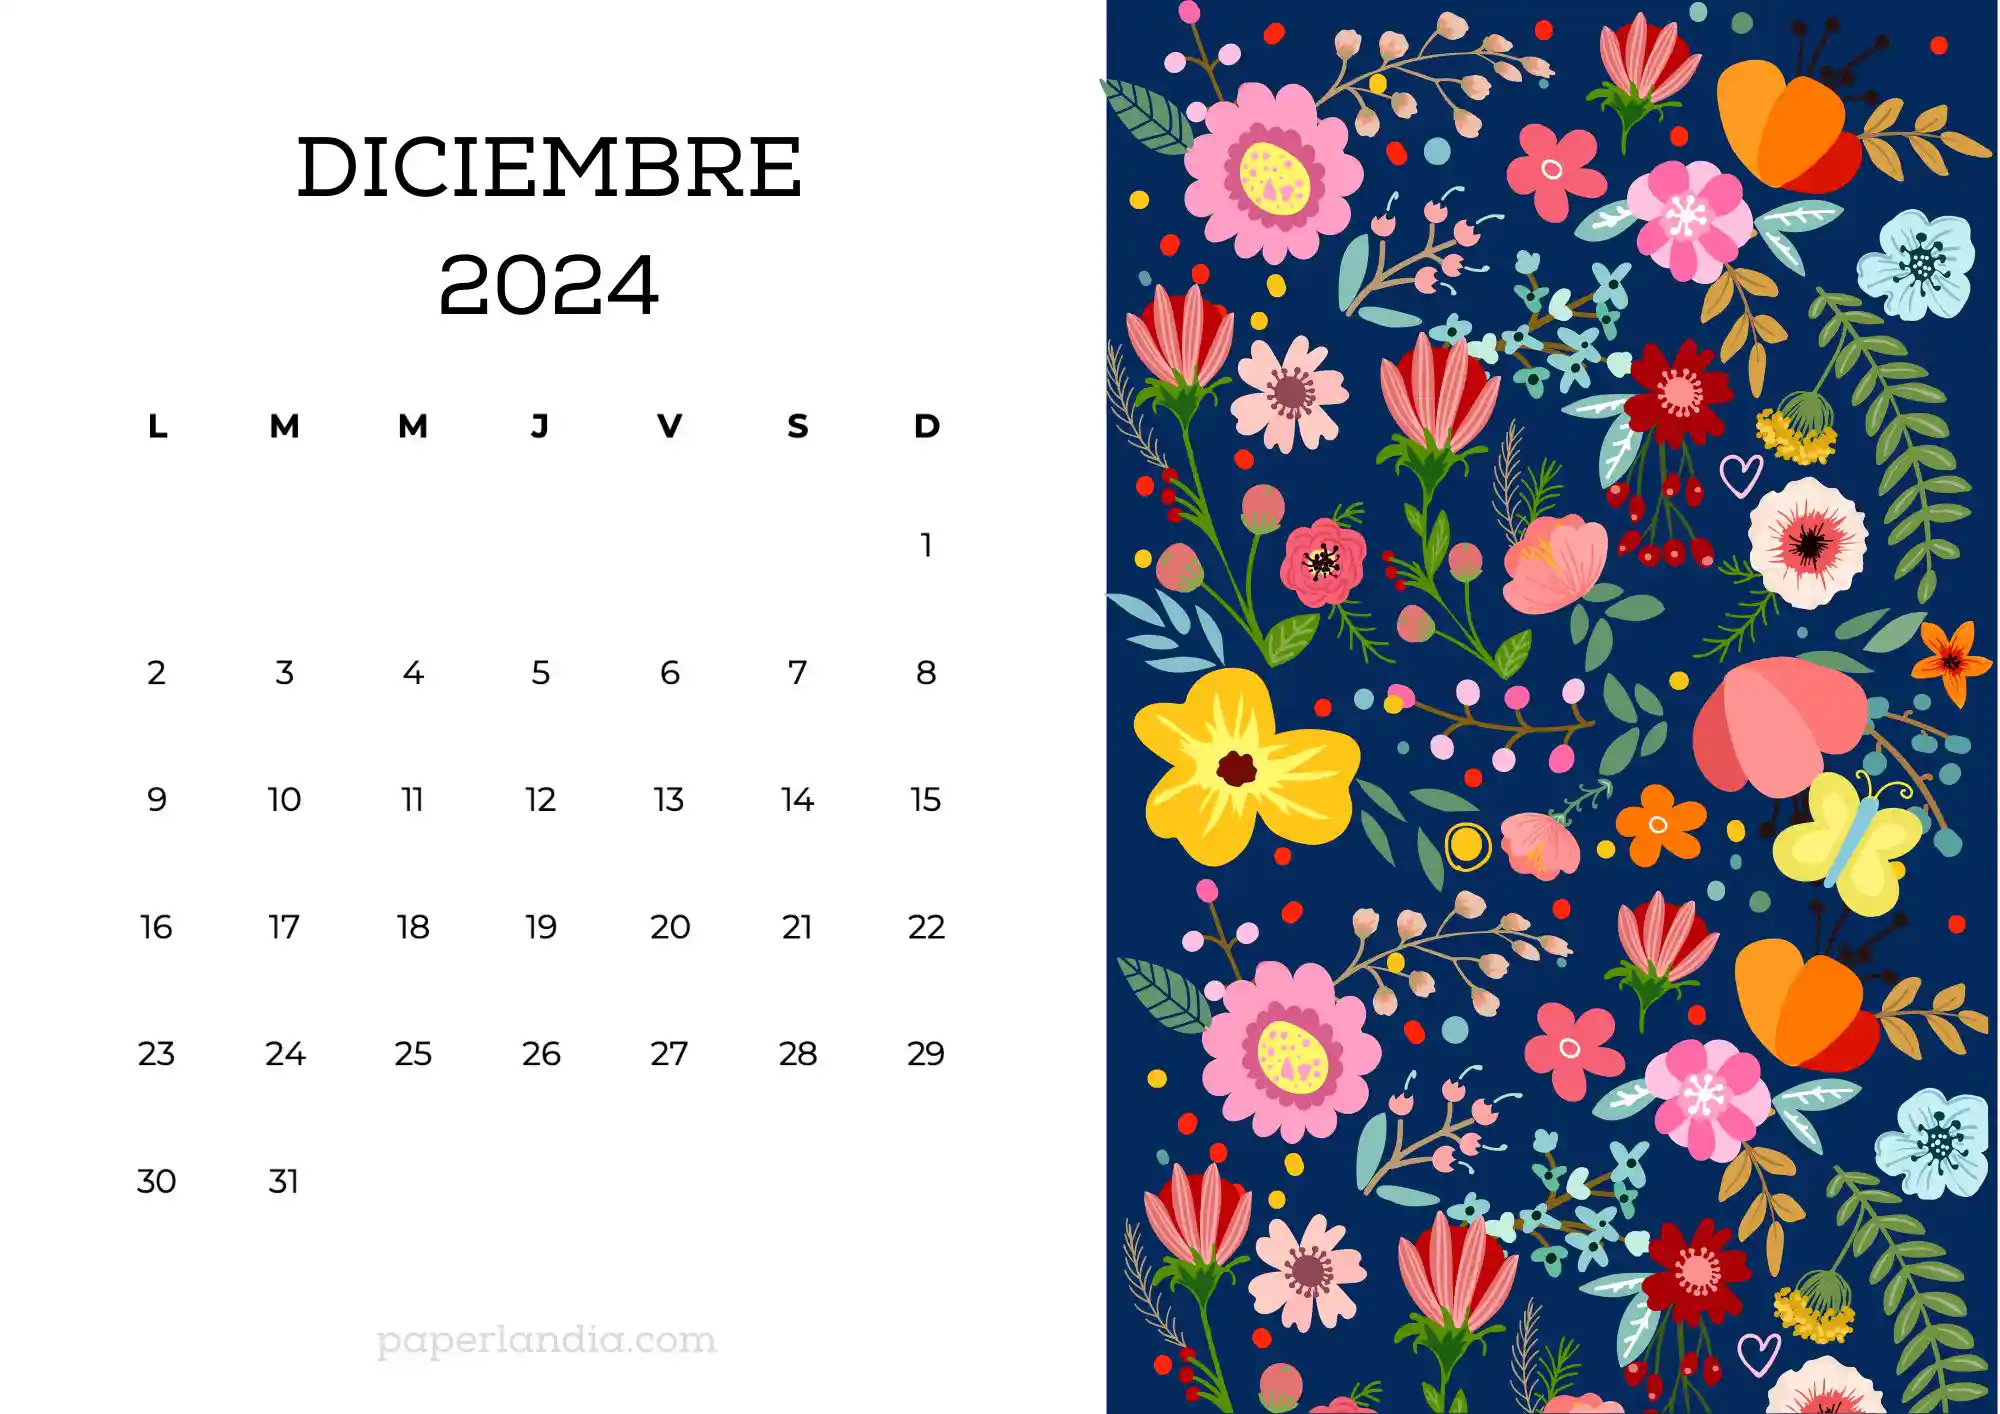 Calendario diciembre 2024 horizontal con flores escandinavas fondo azul